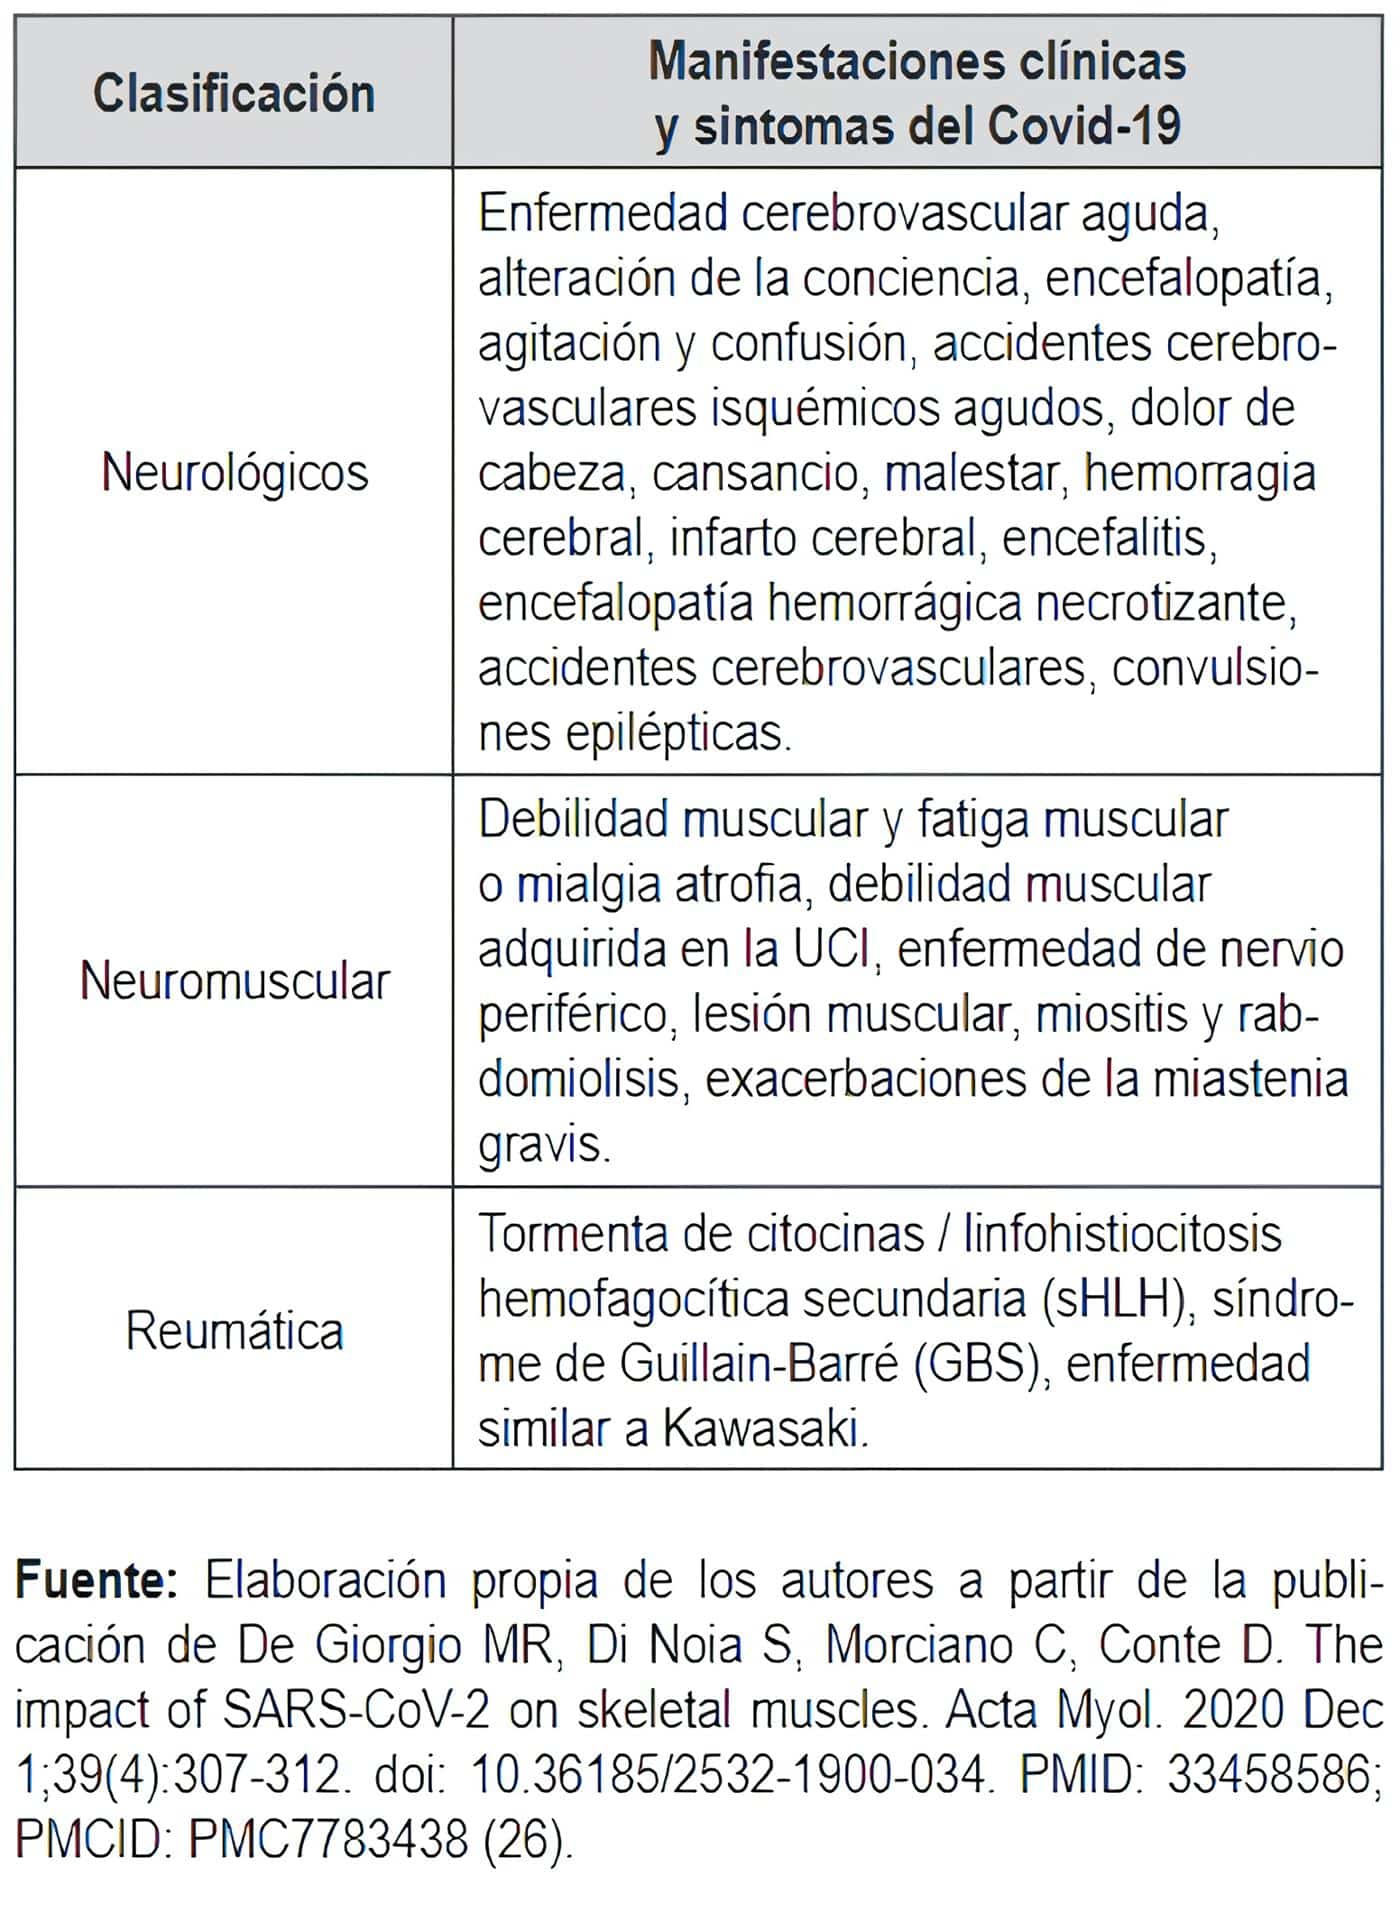 Manifestaciones neurológicas, neuromusculares y musculares poscovid-19 más frecuentes